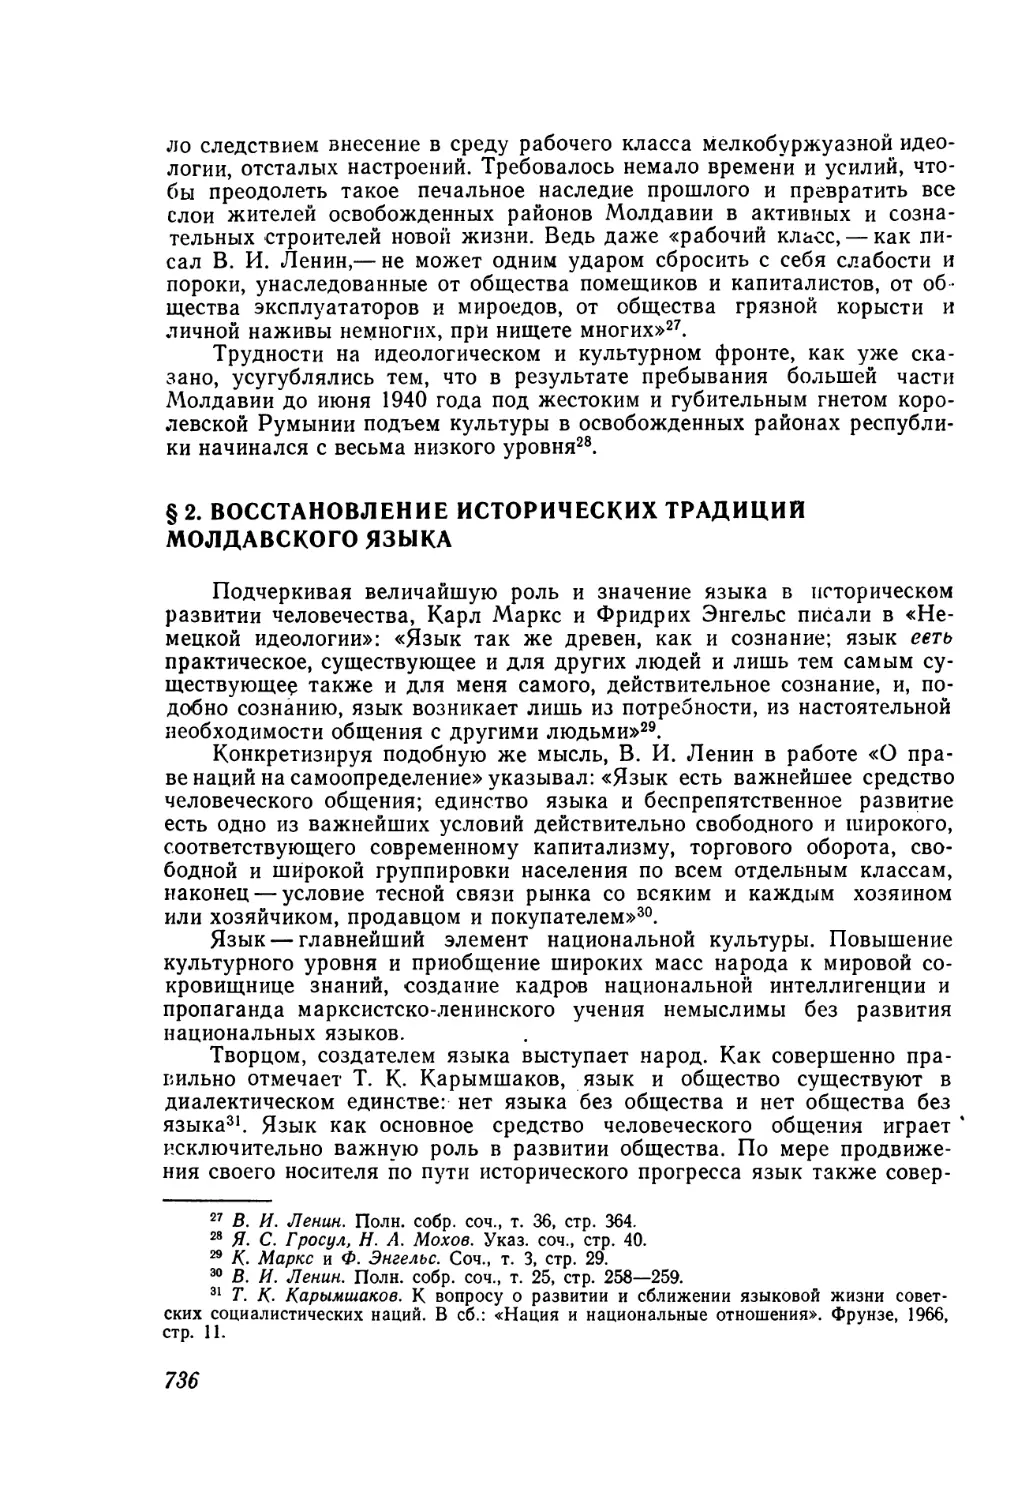 § 2. Восстановление исторических традиций молдавского языка